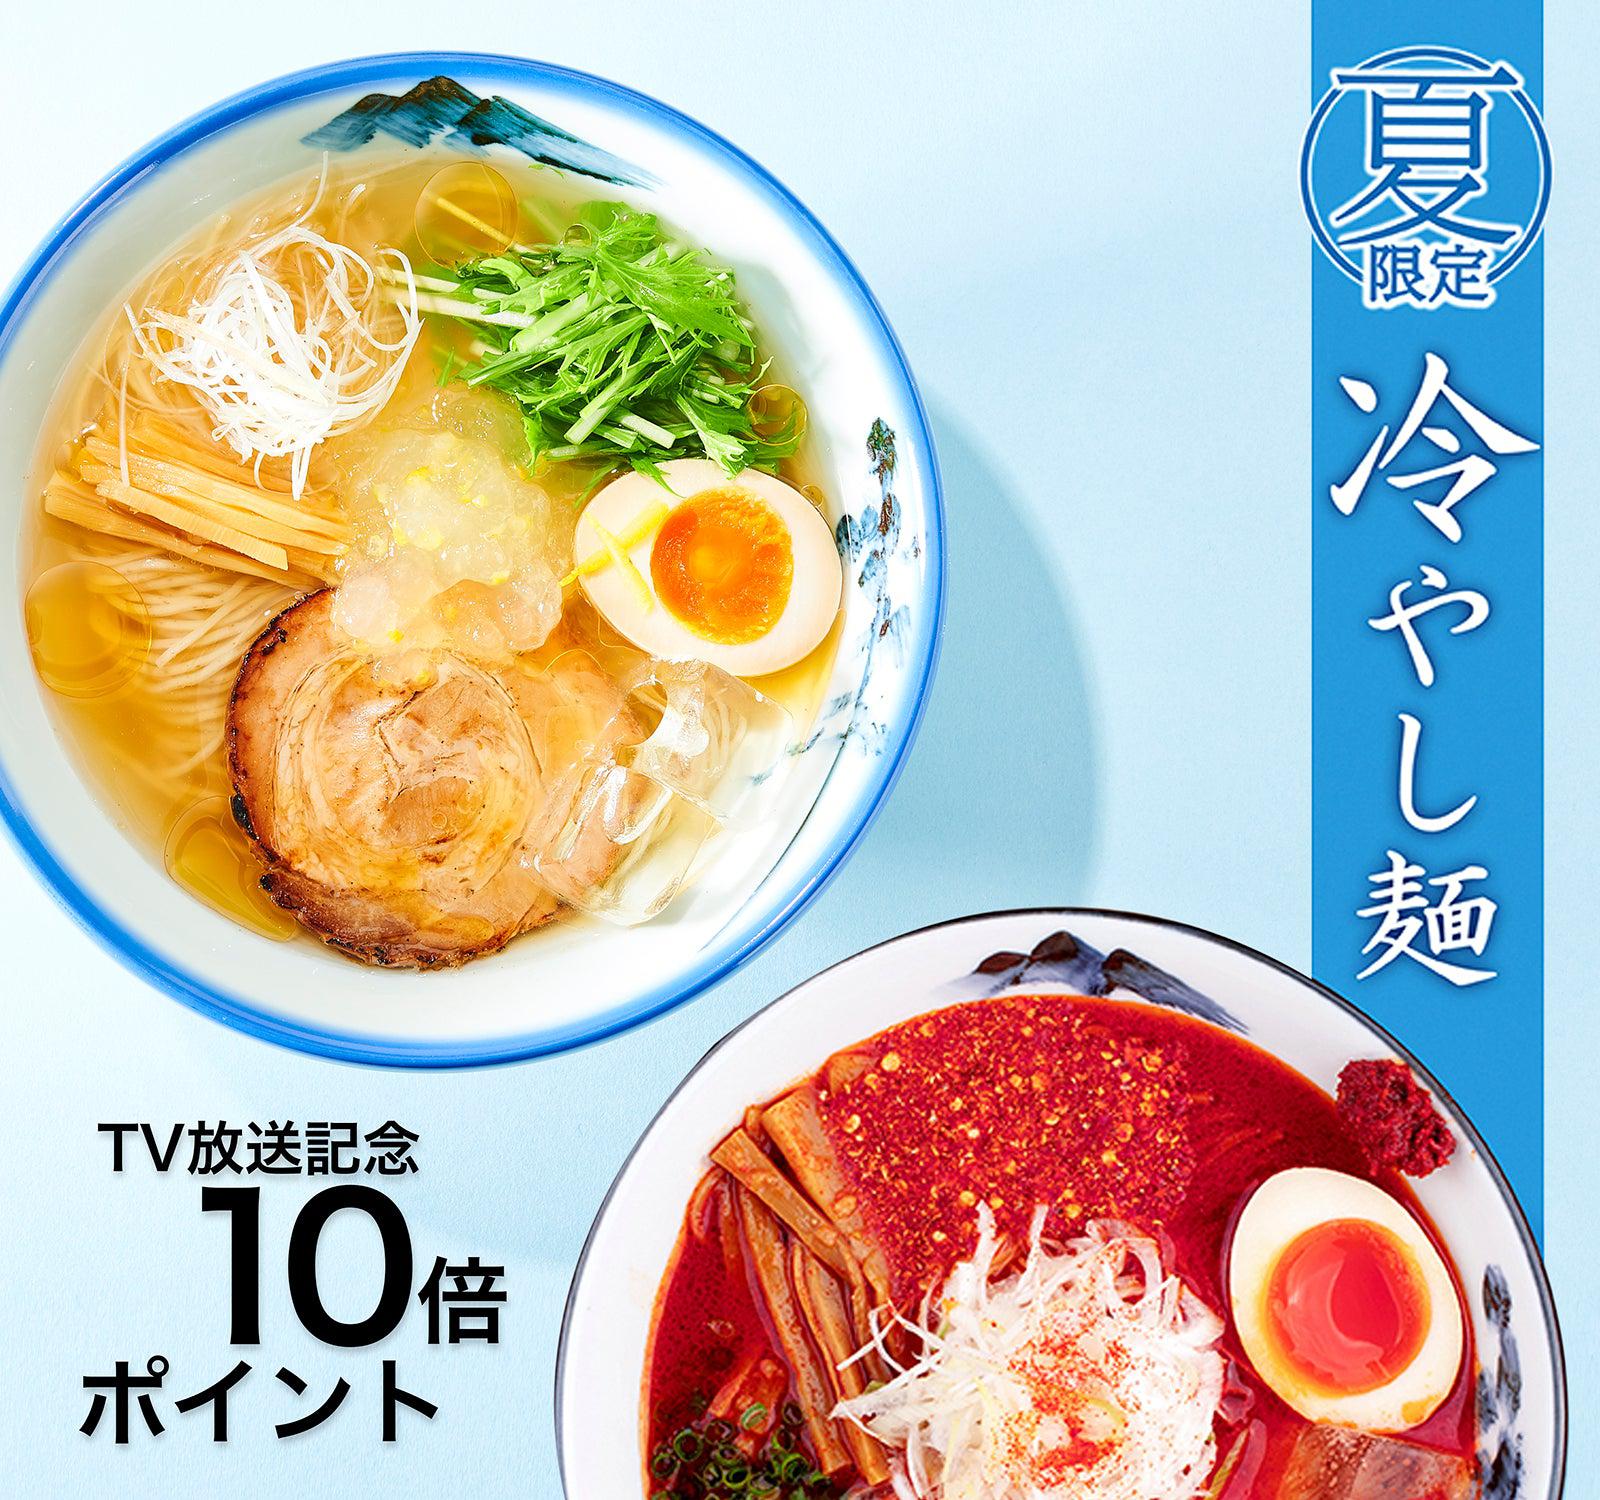 【終了】TV放送記念”冷やし麺”ポイント10倍キャンペーン